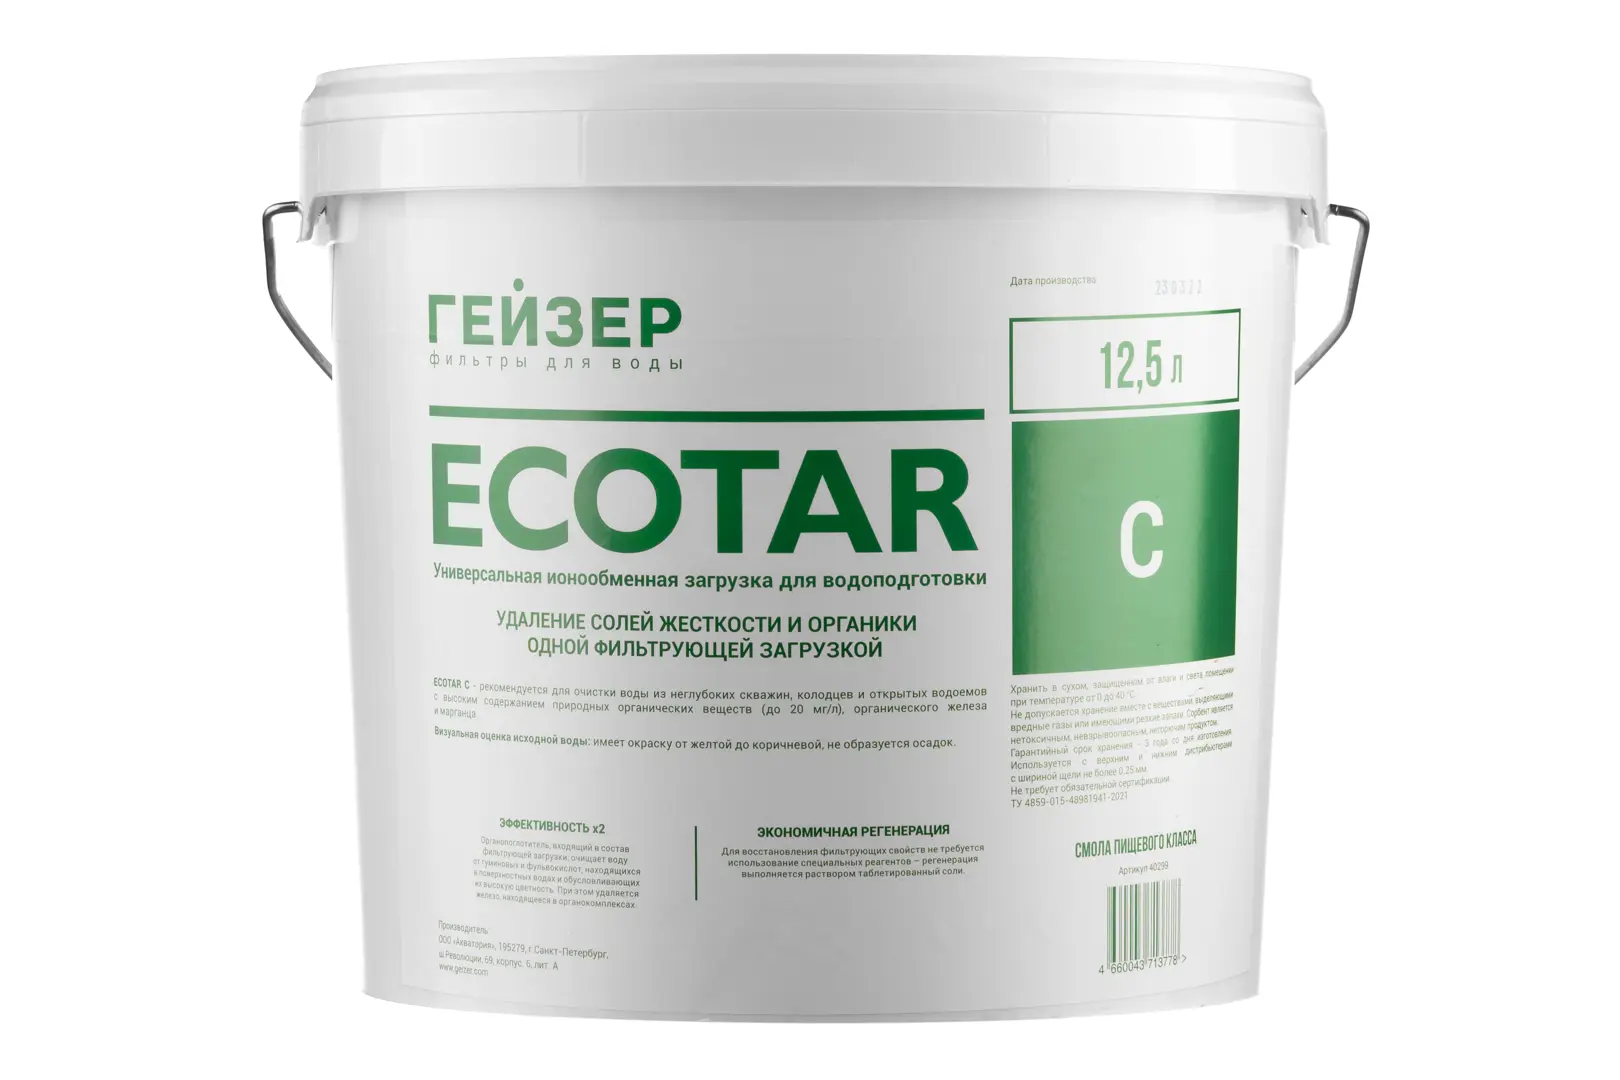 Засыпка Ecotar С для Гейзер ведро 12.5 л рl средство для очистки водоёмов 960 мл